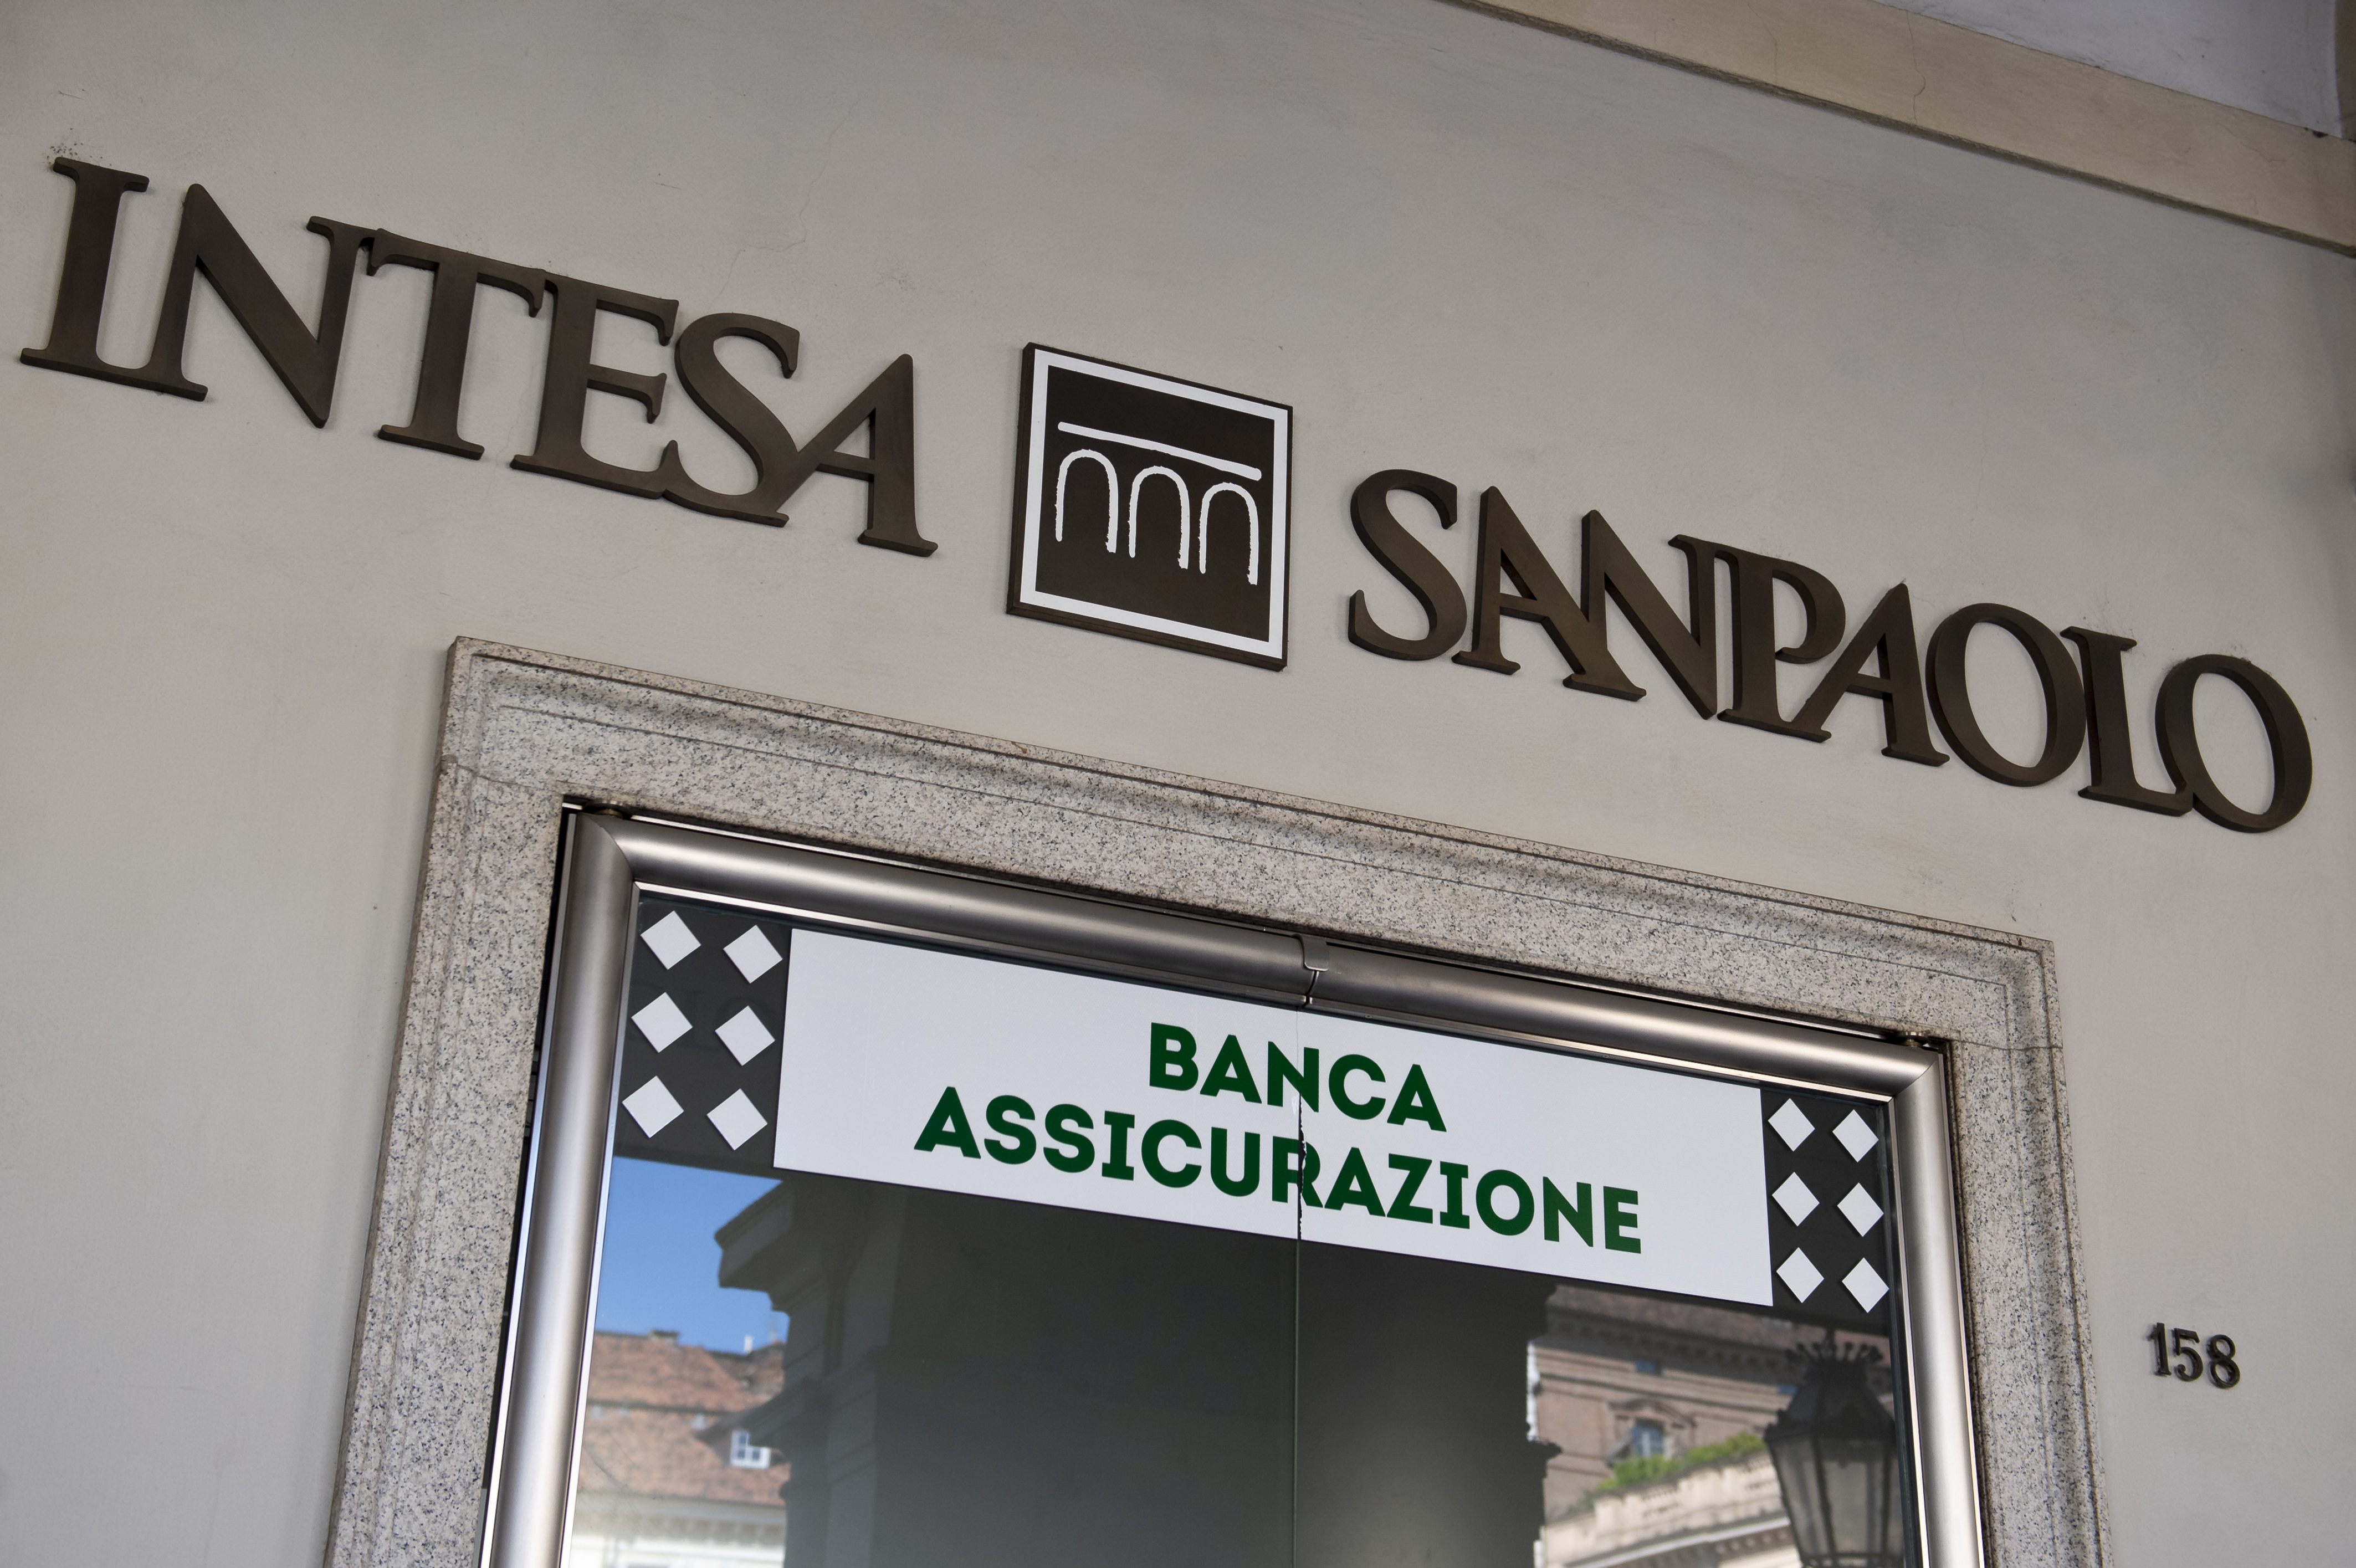 Banca intesa. Банк Интеза совет директоров. Banca Intesa Italy app.